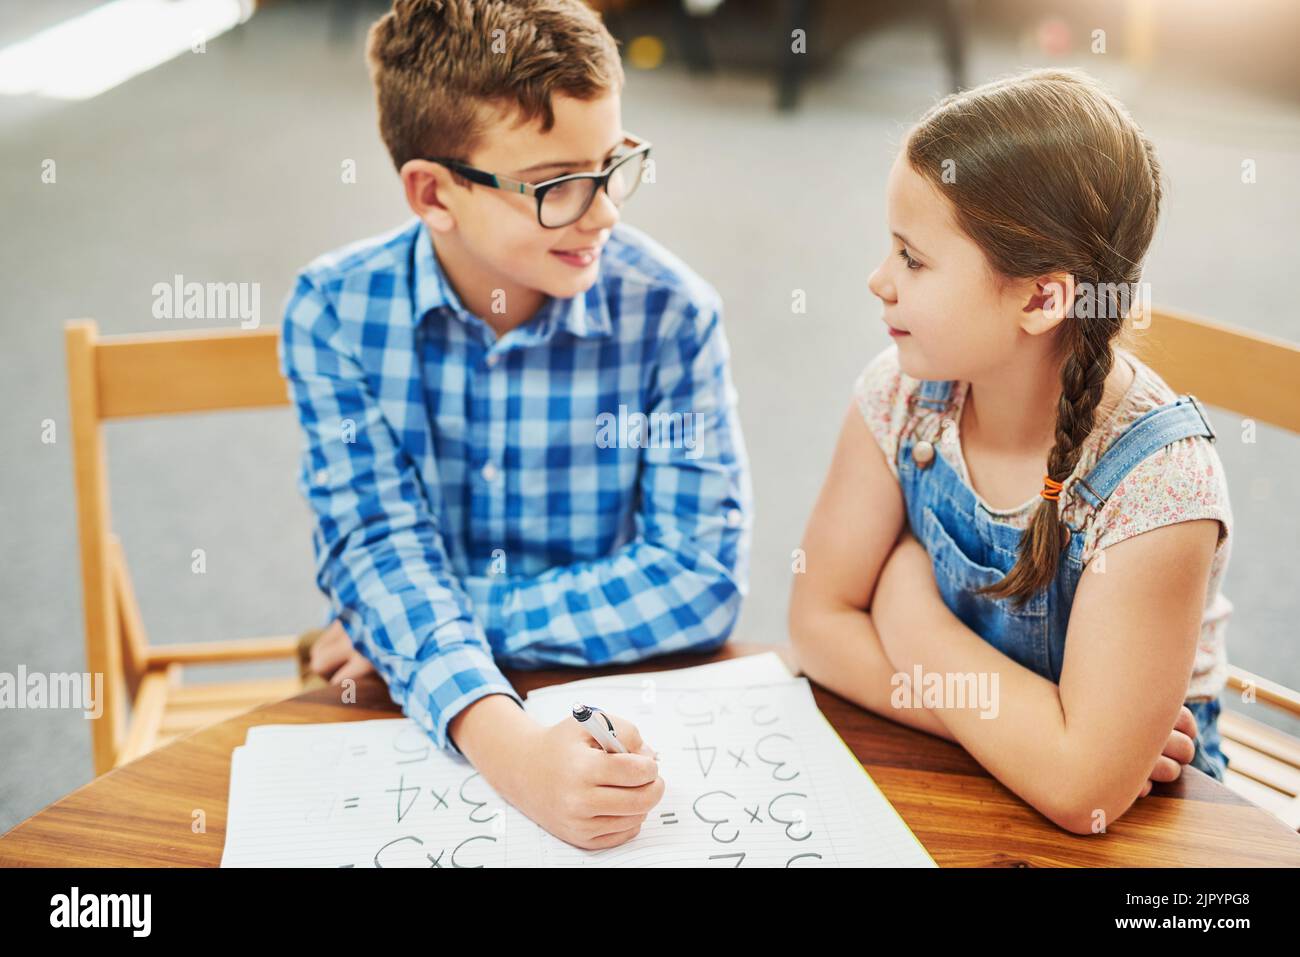 Ist das wirklich die Antwort? Zwei kleine Kinder arbeiten tagsüber in einem Klassenzimmer zusammen. Stockfoto